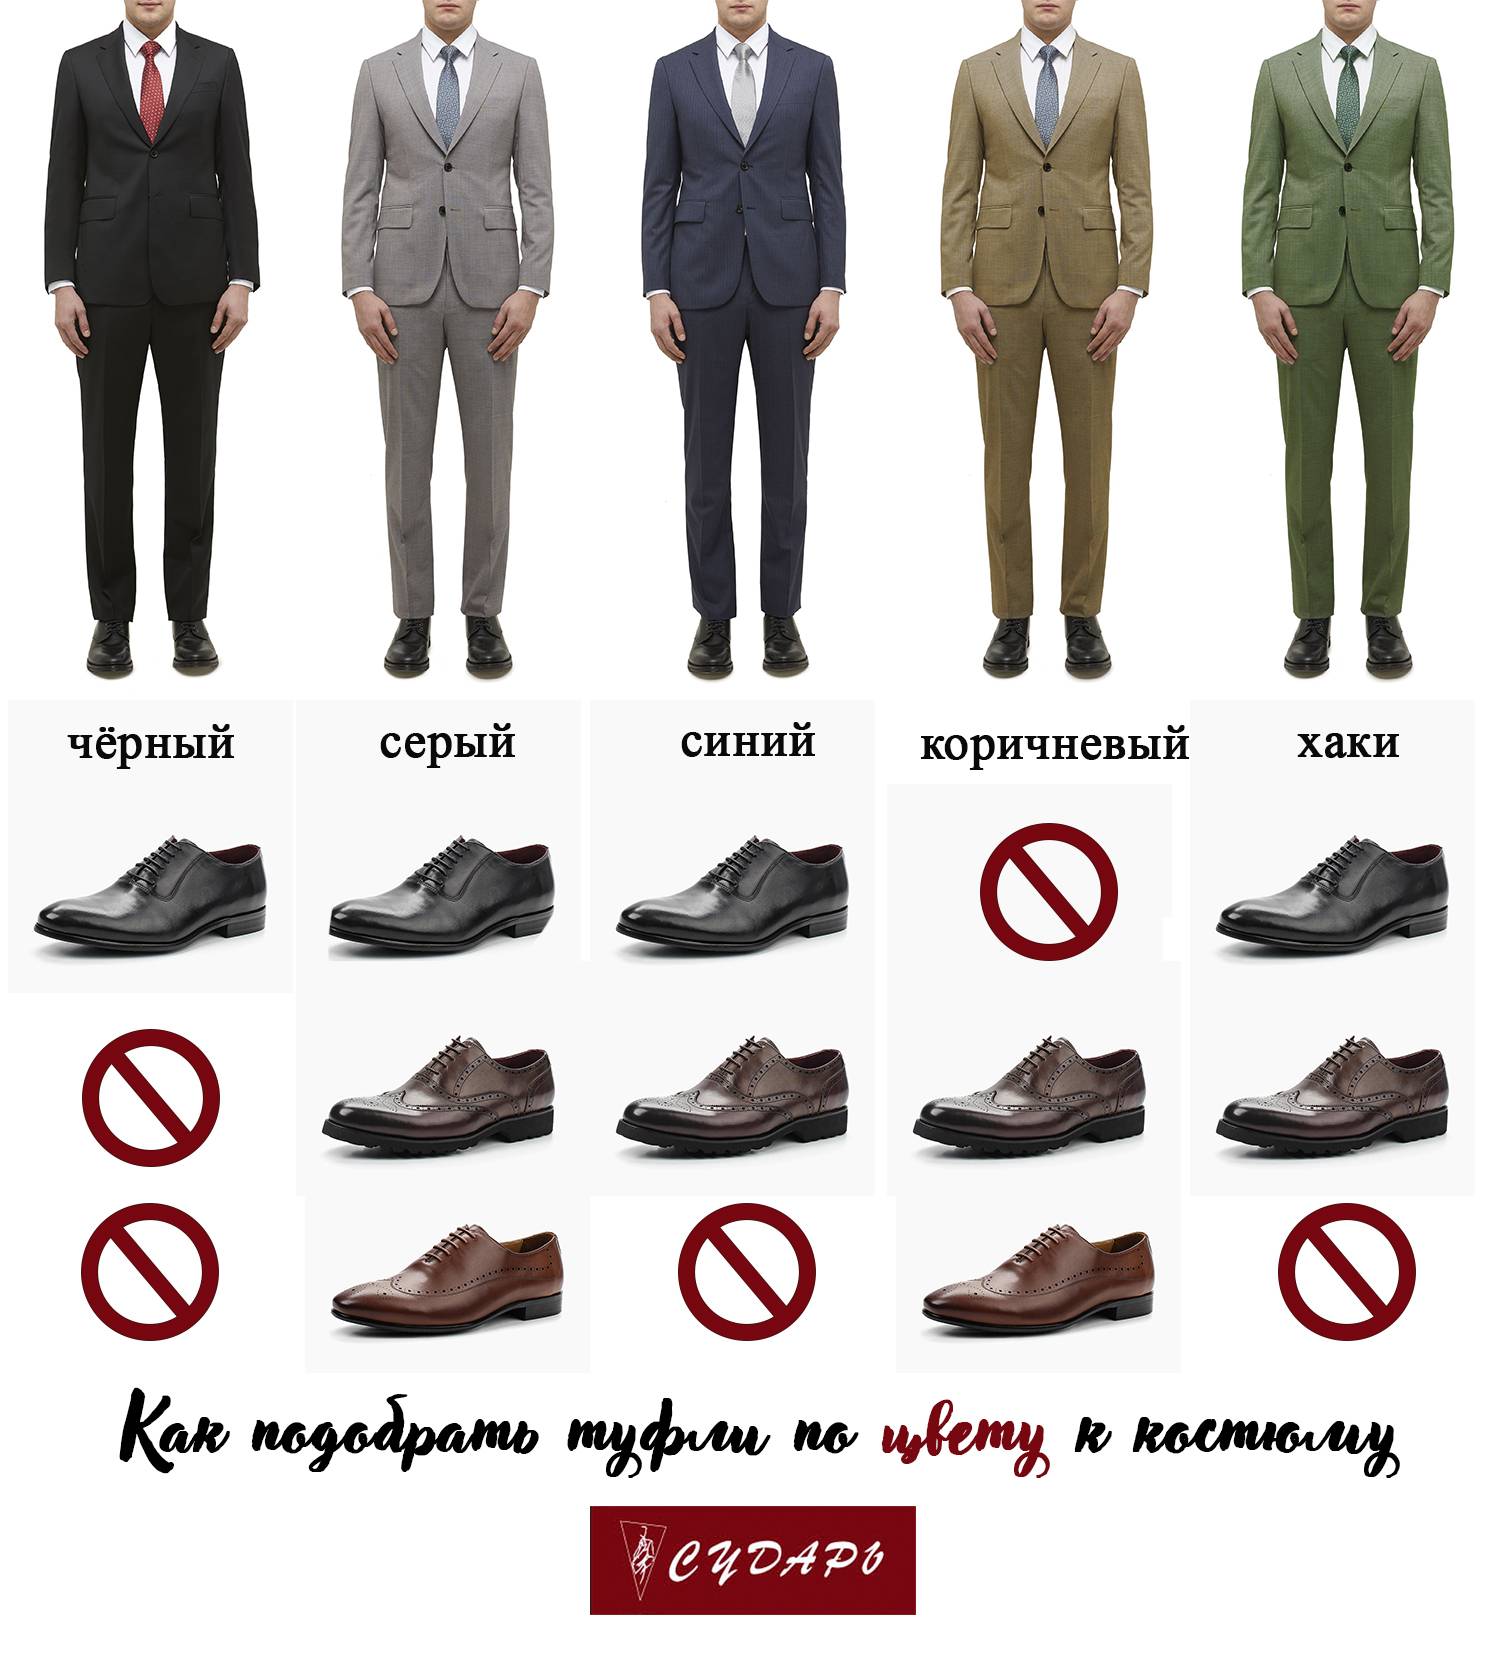 Как правильно одеваться мужчине